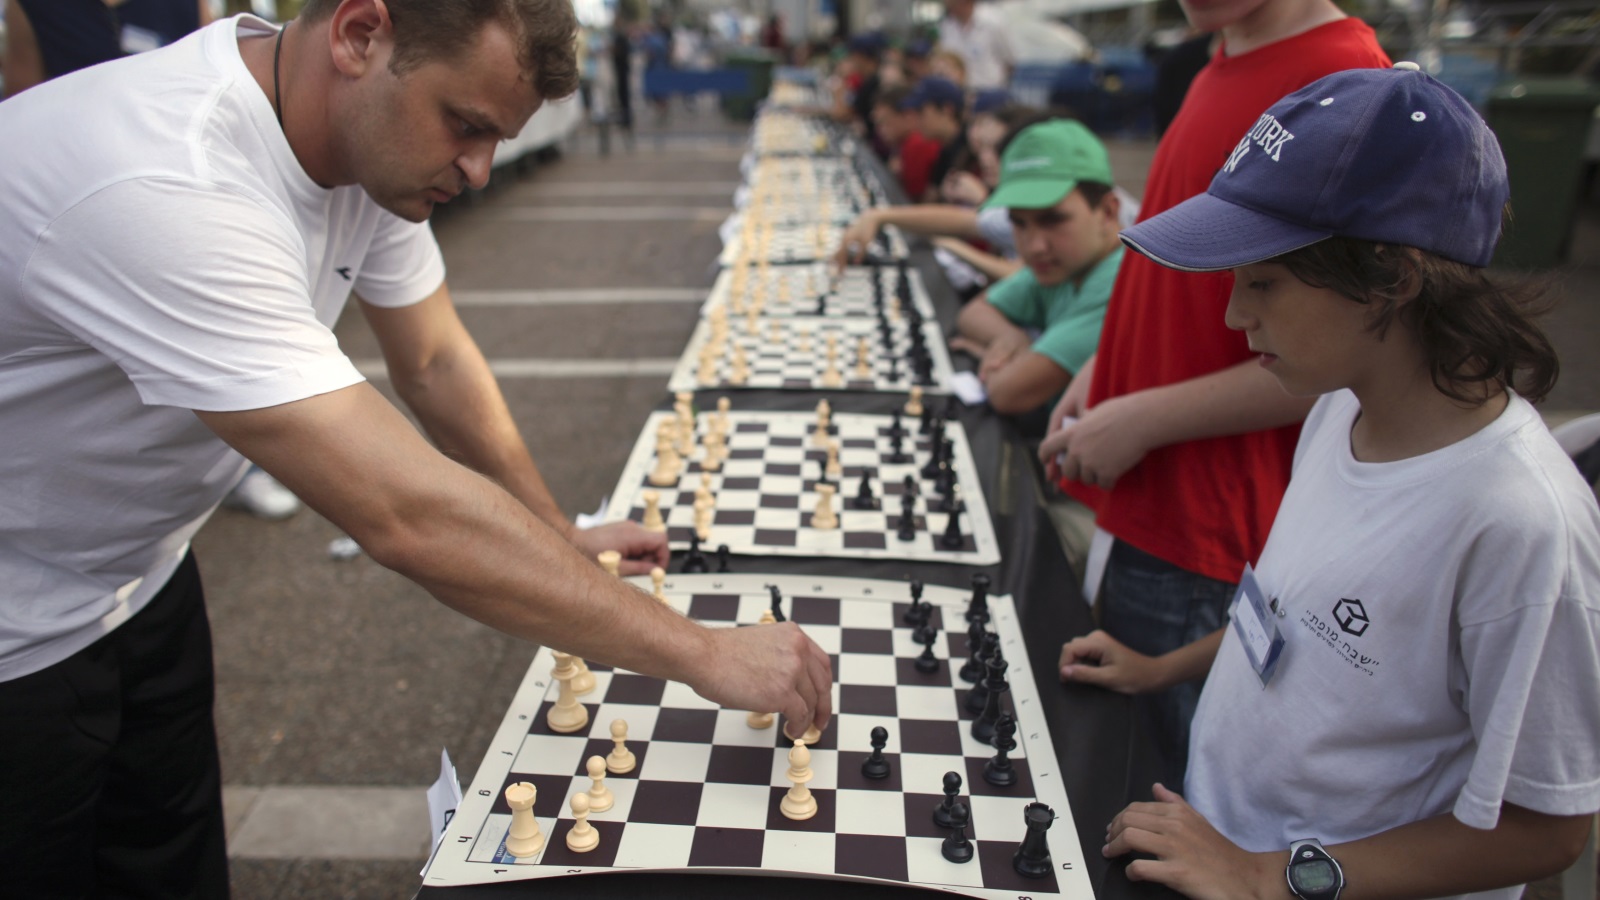 خلاصة ما يقوله الخبراء أن الشطرنج لا يلعبه الأذكياء، وإنما يلعبه من يسعى للذكاء